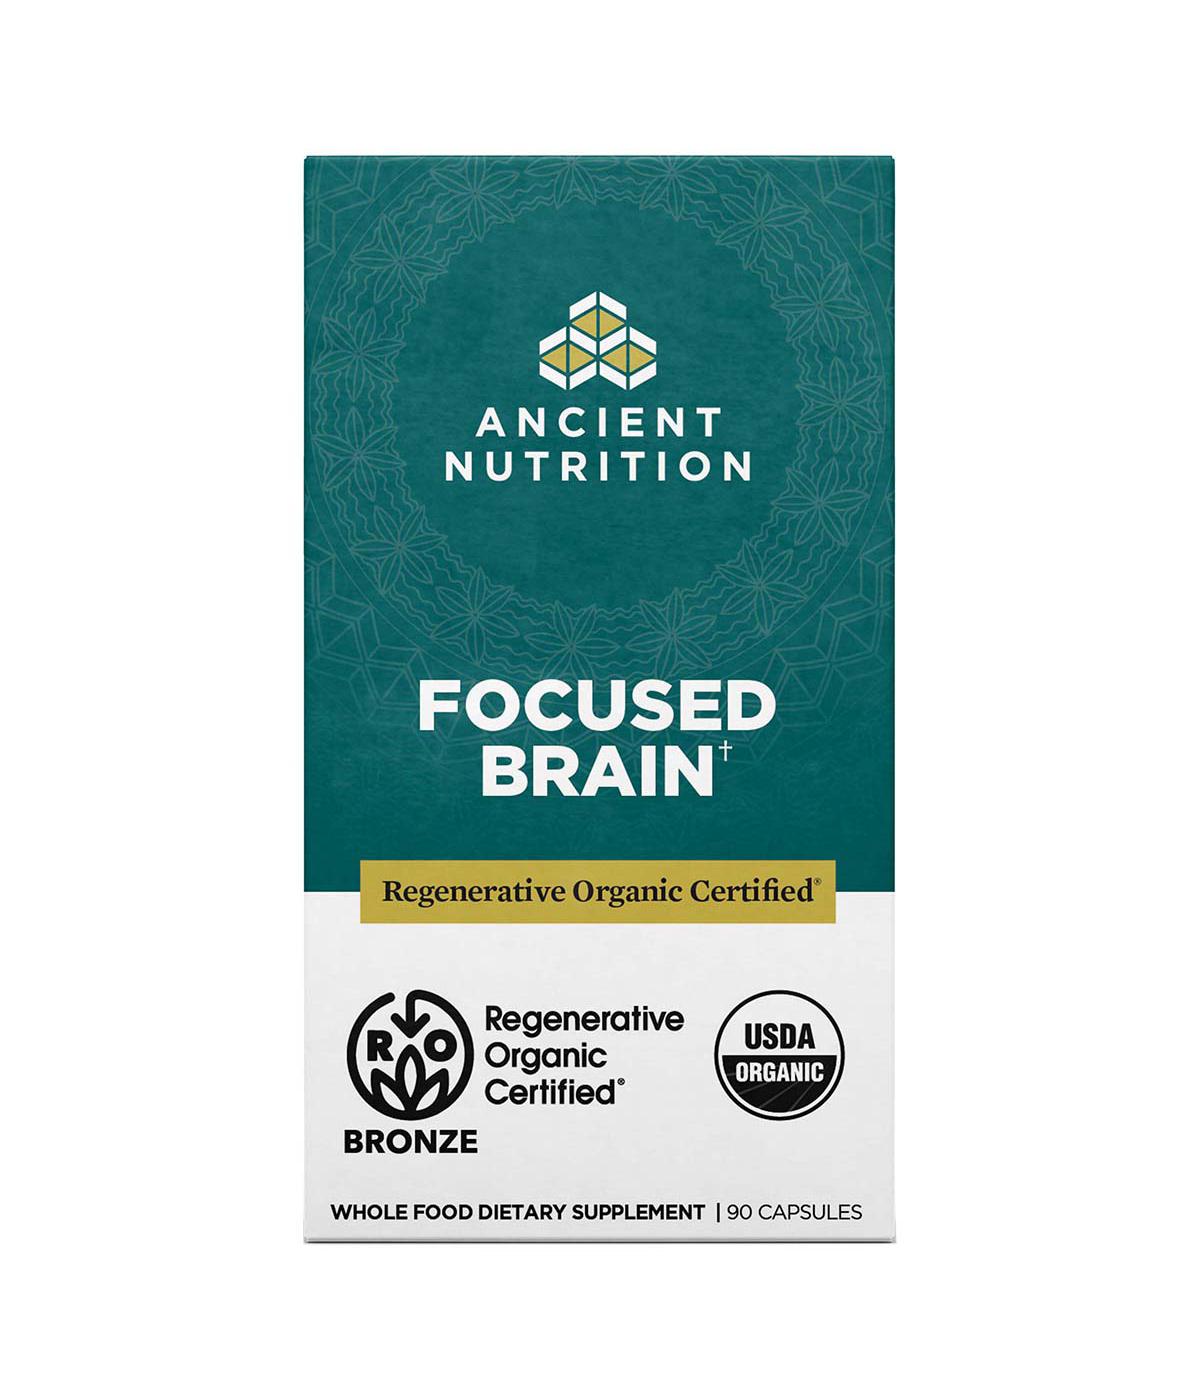 Ancient Nutrition Focused Brain Capsules; image 1 of 5